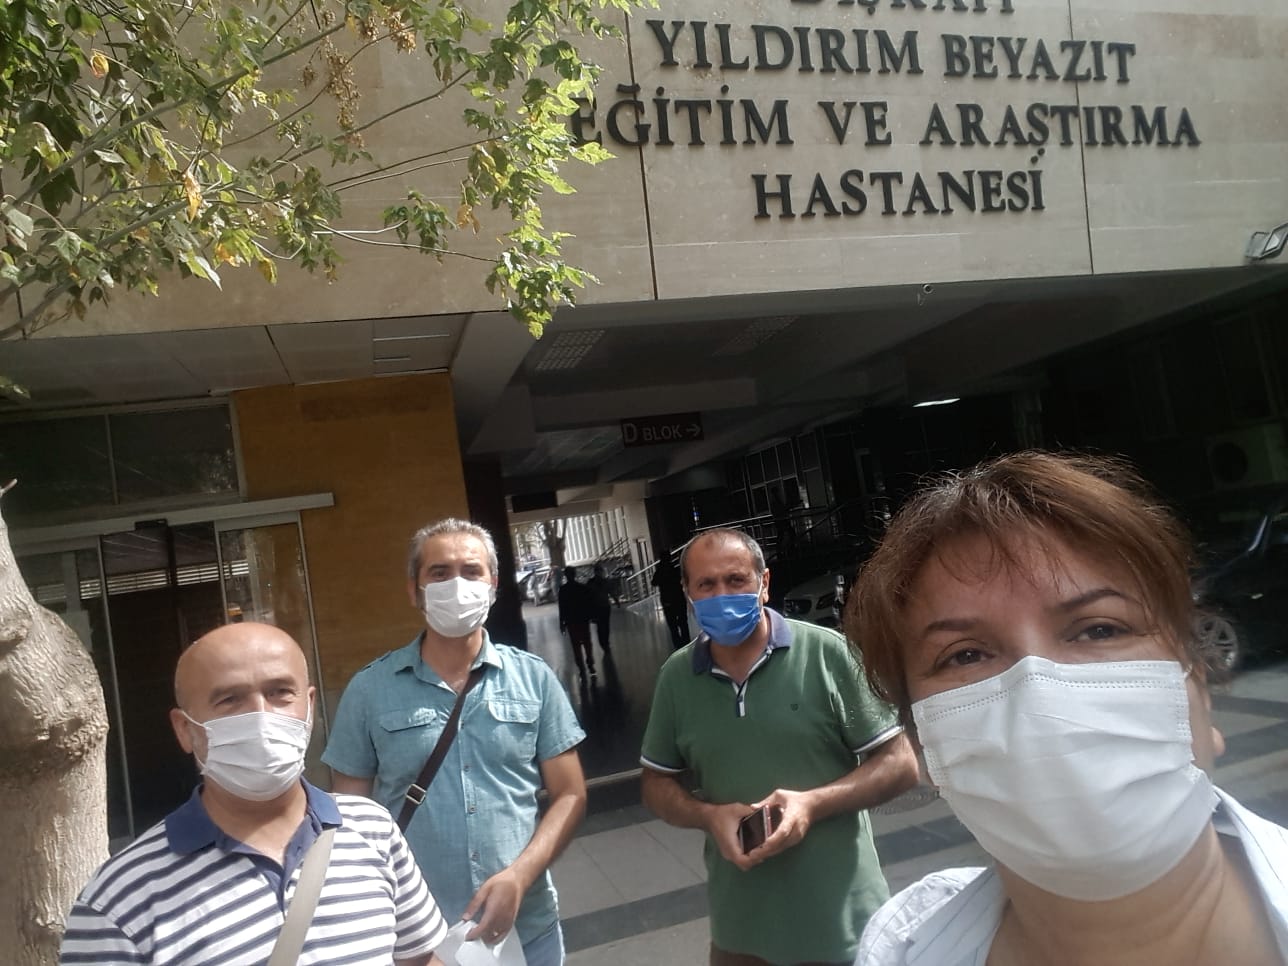 Ankara Şubemiz Dışkapı Eğitim ve Araştırma Hastanesi’nde Bildiri Dağıttı